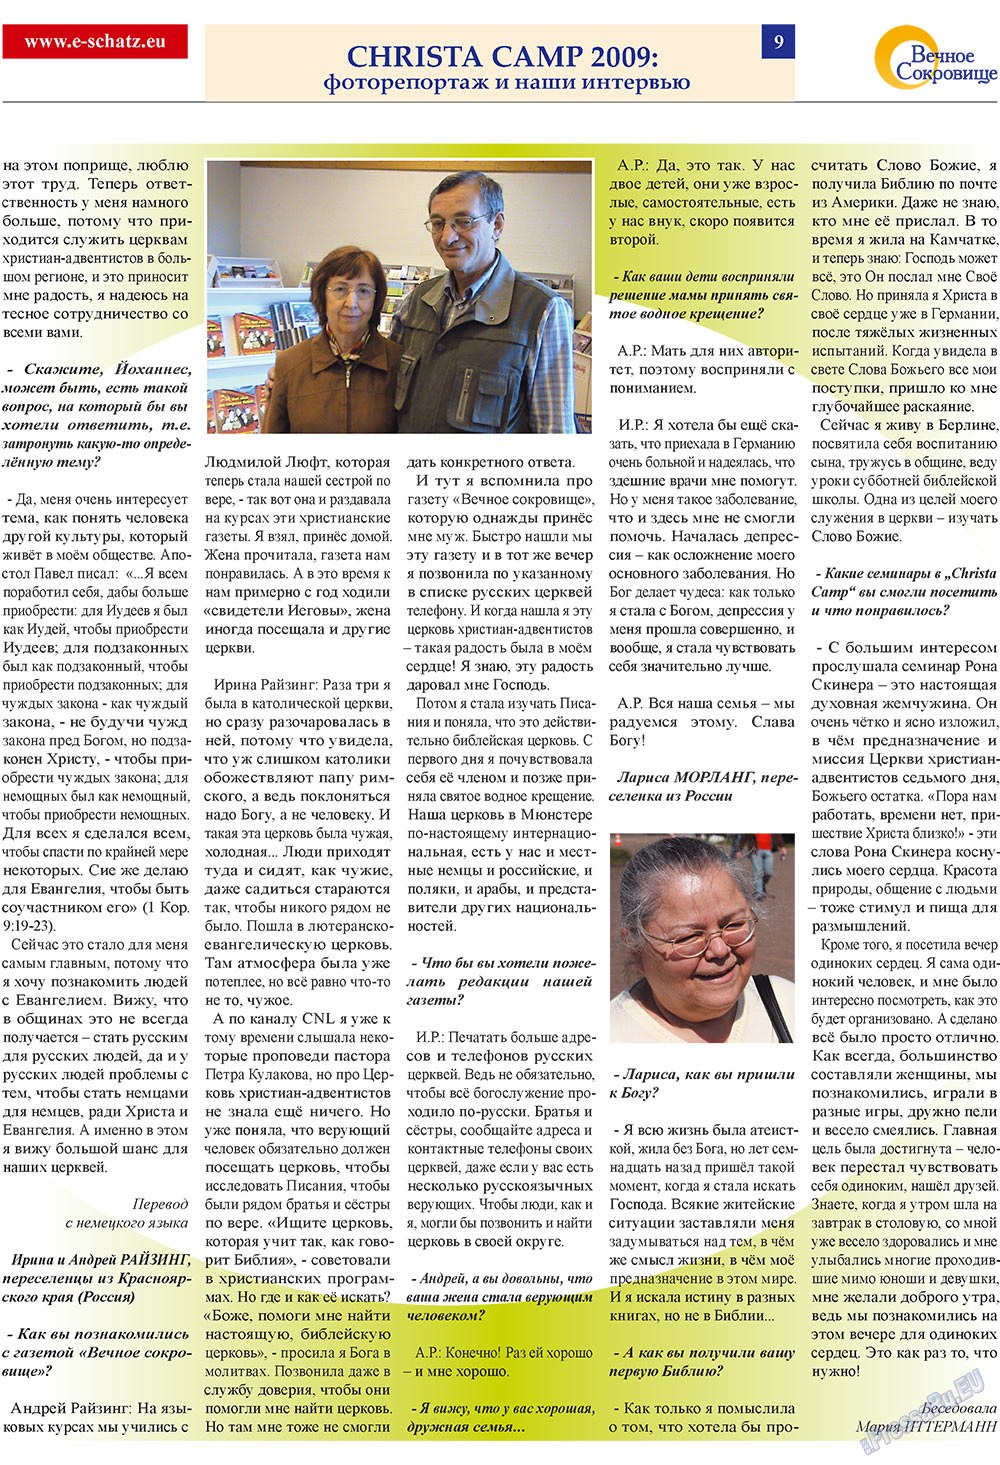 Вечное сокровище, газета. 2009 №2 стр.9